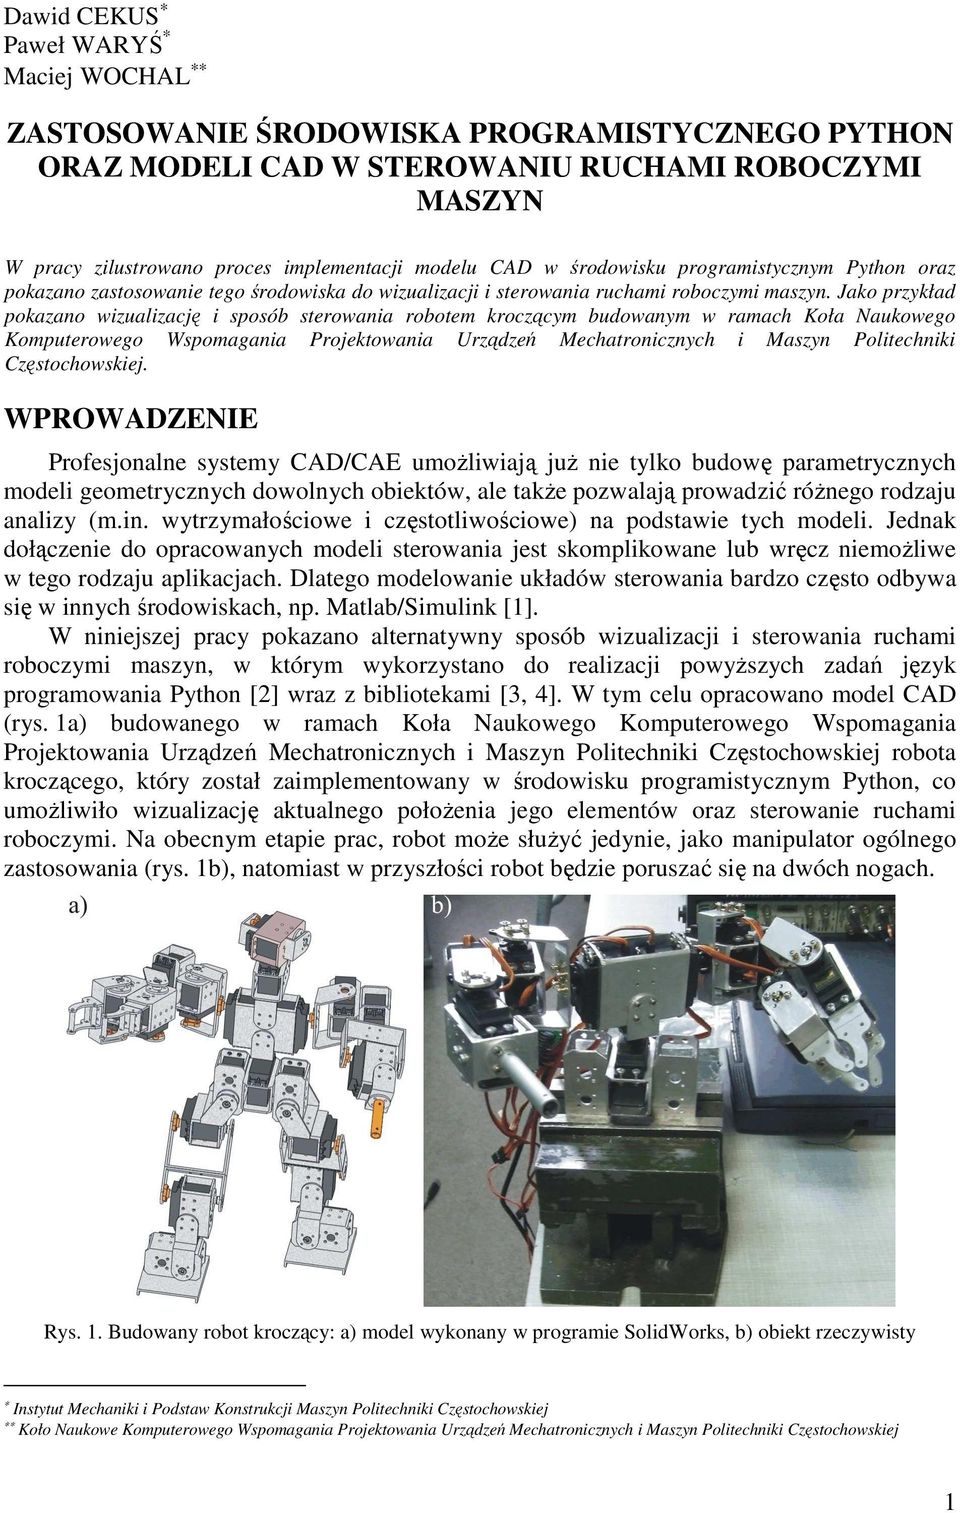 Jako przykład pokazano wizualizację i sposób sterowania robotem kroczącym budowanym w ramach Koła Naukowego Komputerowego Wspomagania Projektowania Urządzeń Mechatronicznych i Maszyn Politechniki